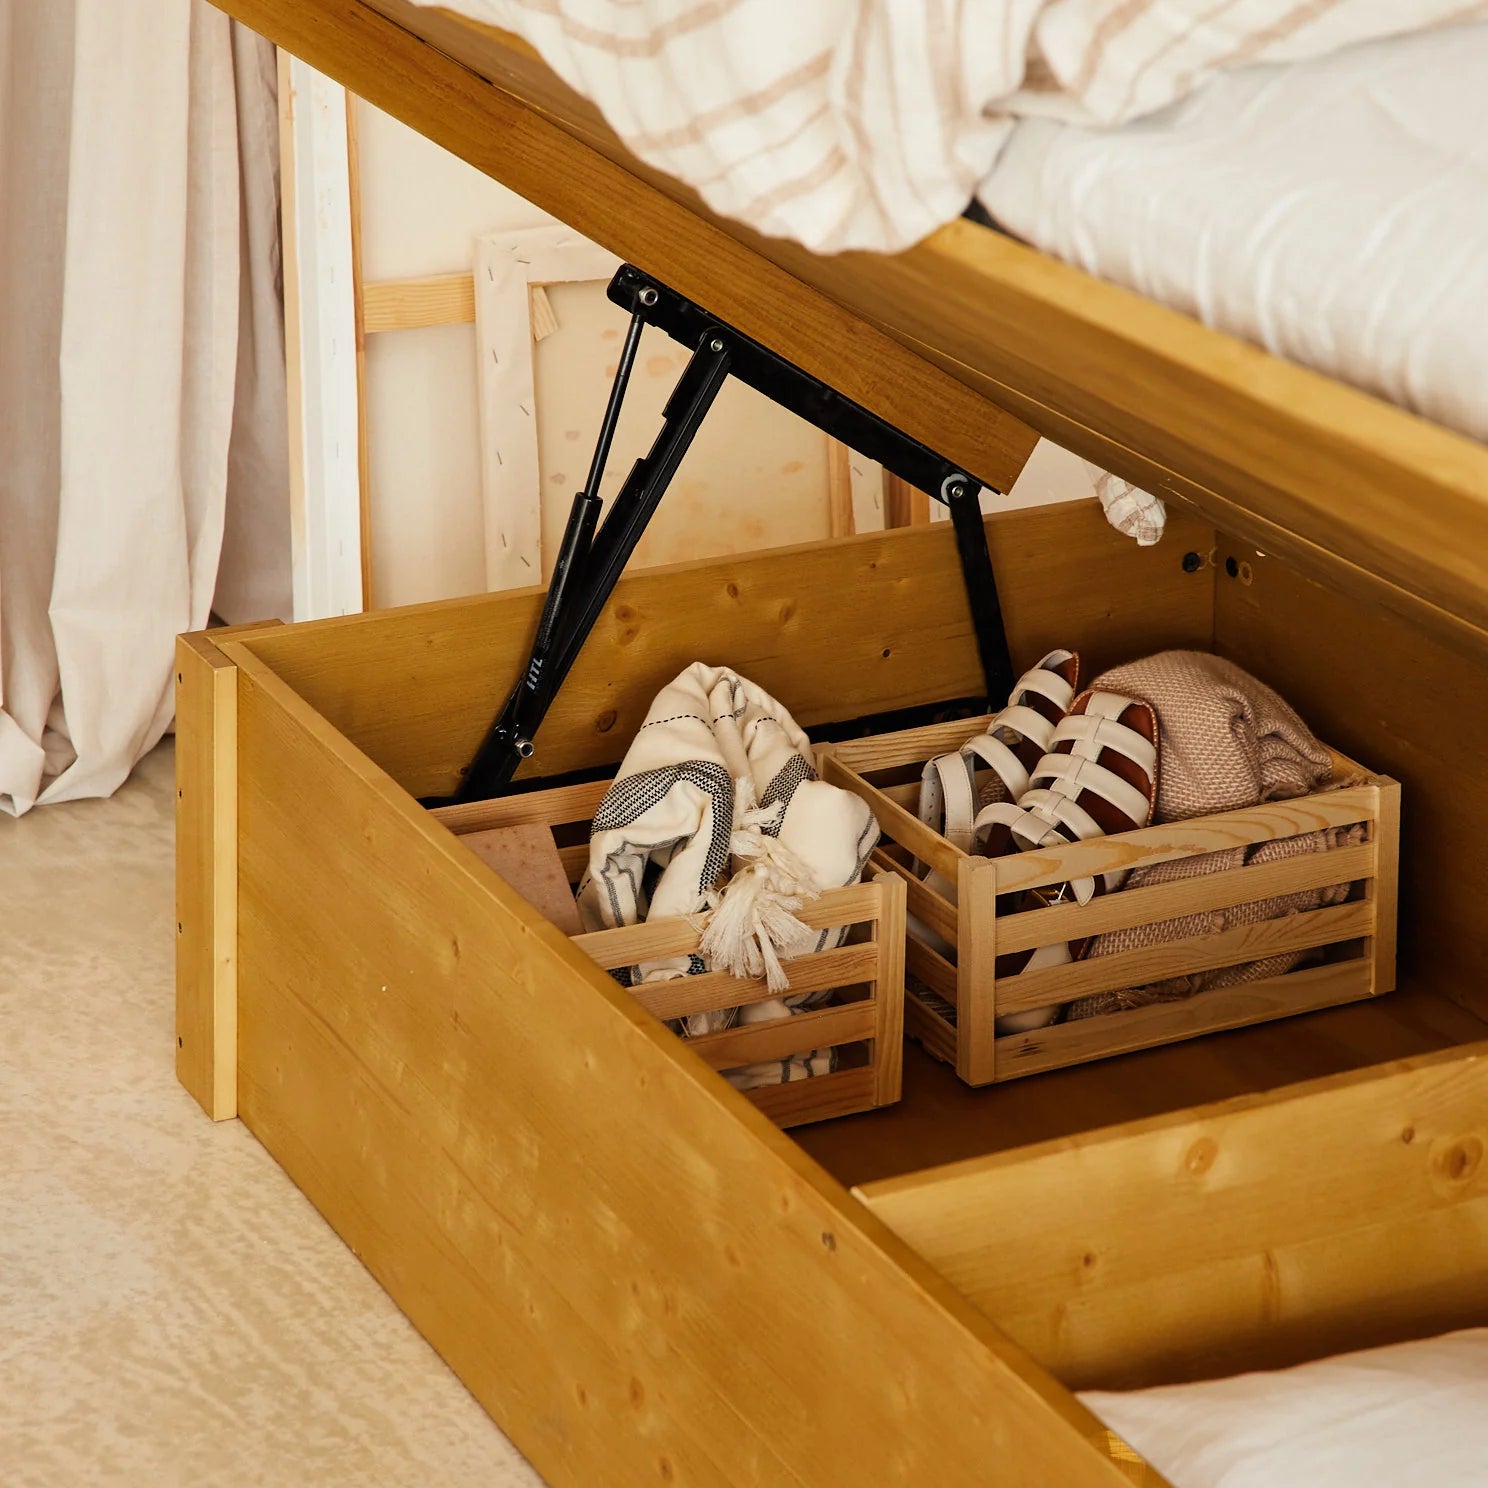 Canapé de madera para ahorrar espacio en tu habitación de invitados.